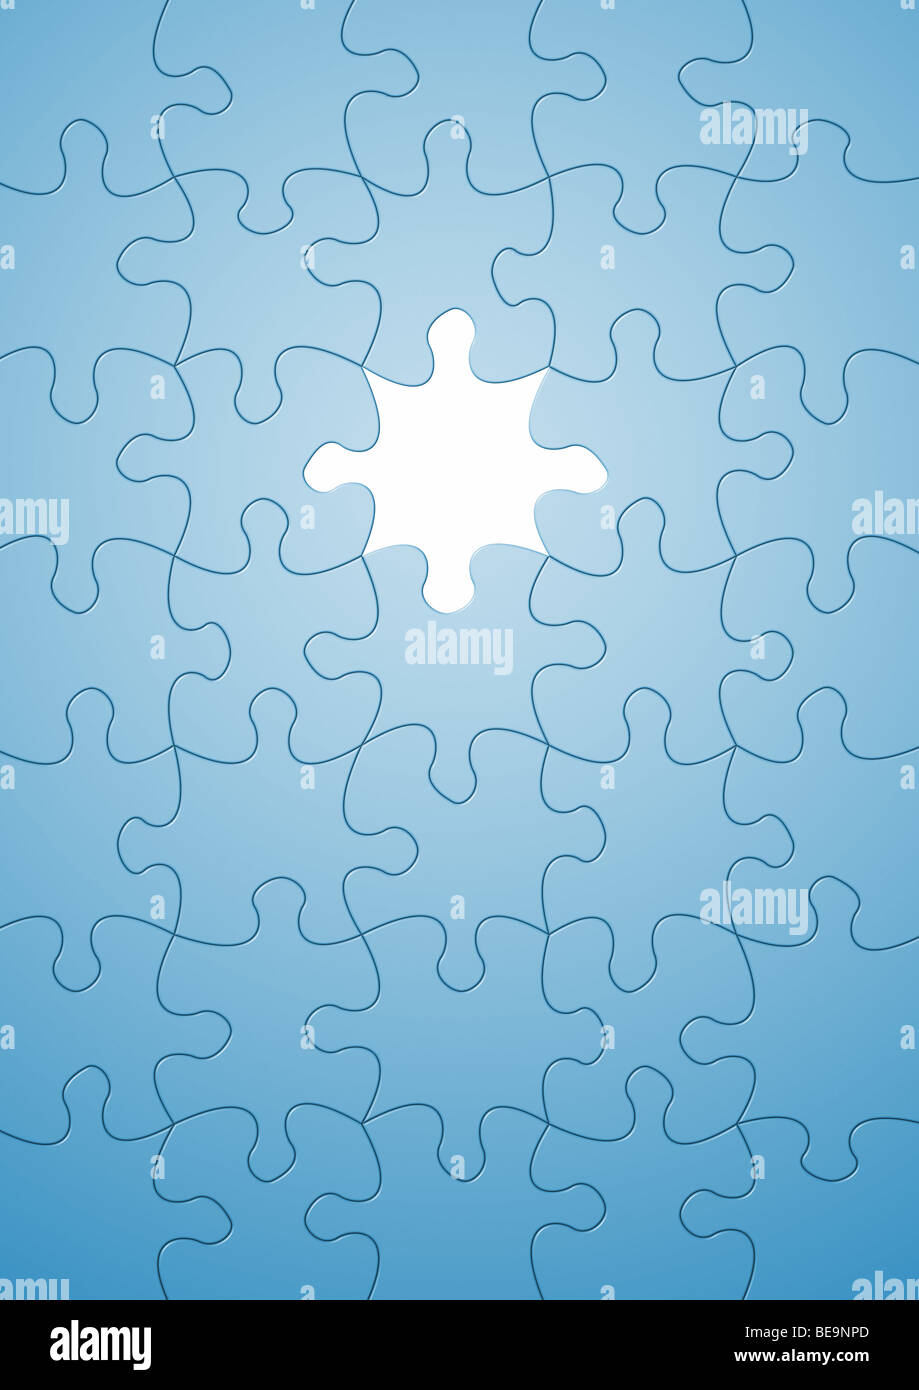 Casse-tête avec une partie manquante - Puzzle mit einem Teil fehlenden  Photo Stock - Alamy